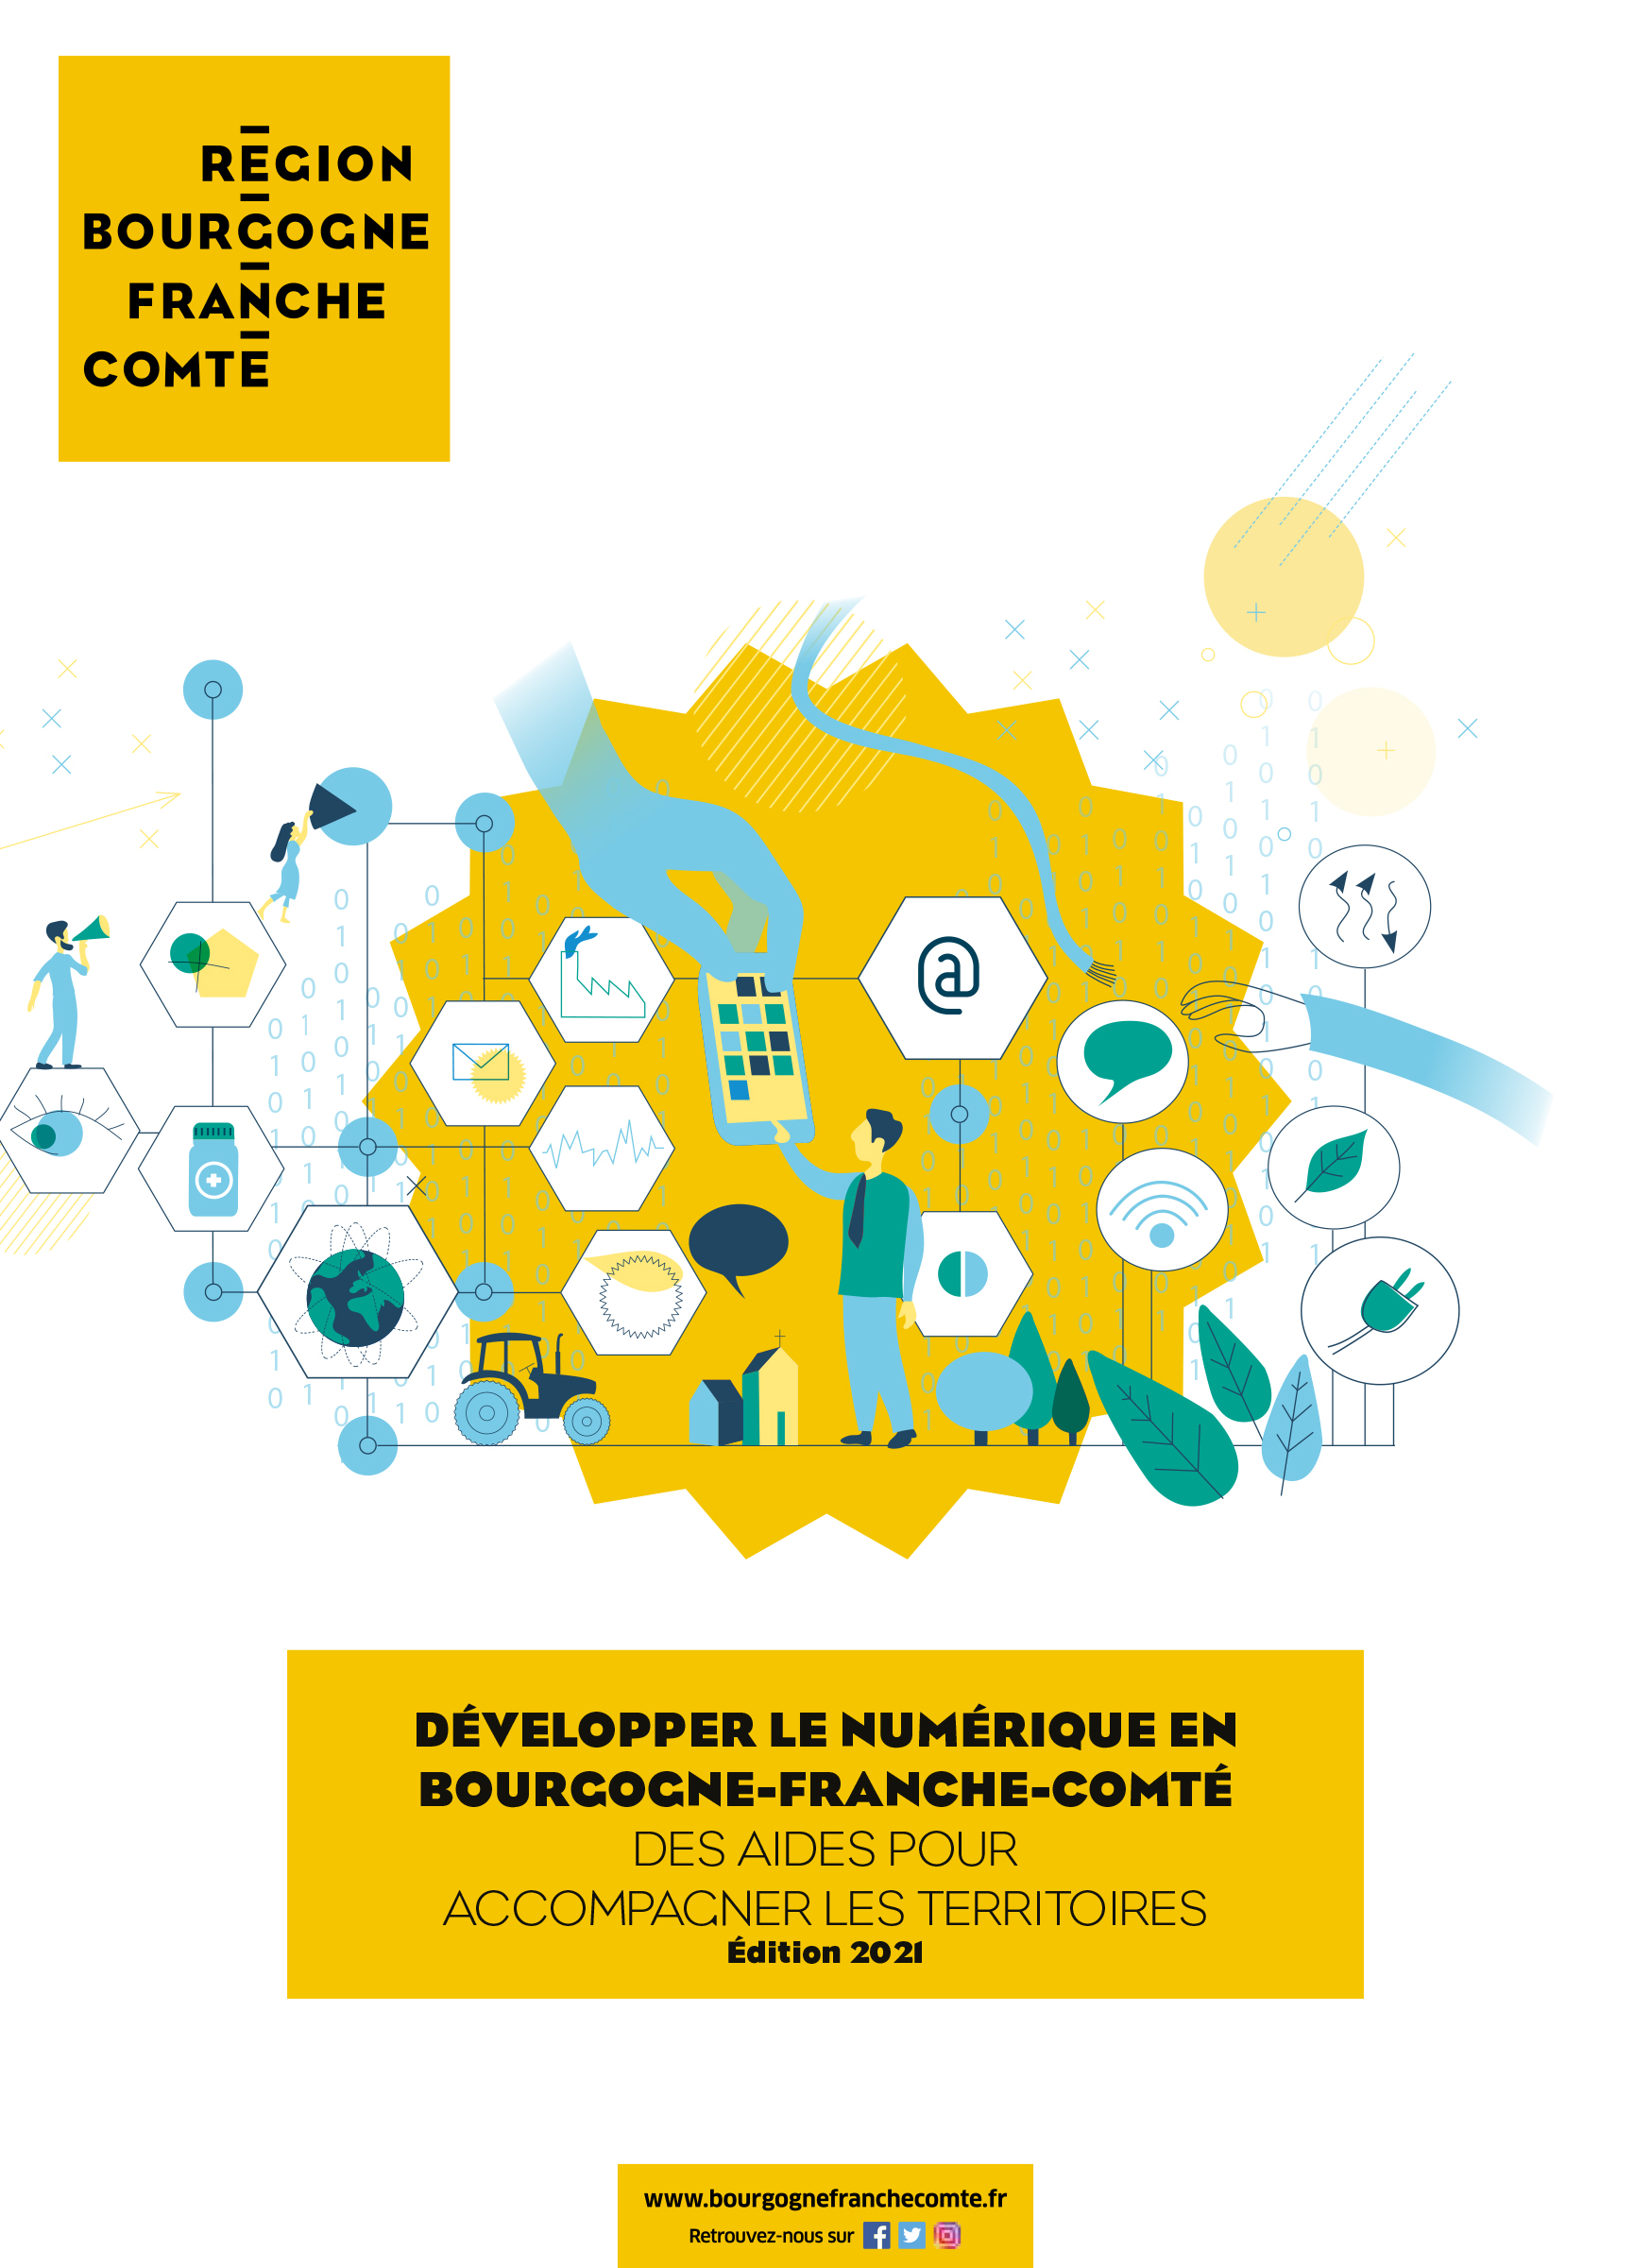 Développer le numérique en Bourgogne-Franche-Comté des aides pour accompagner les territoires - Édition 2021